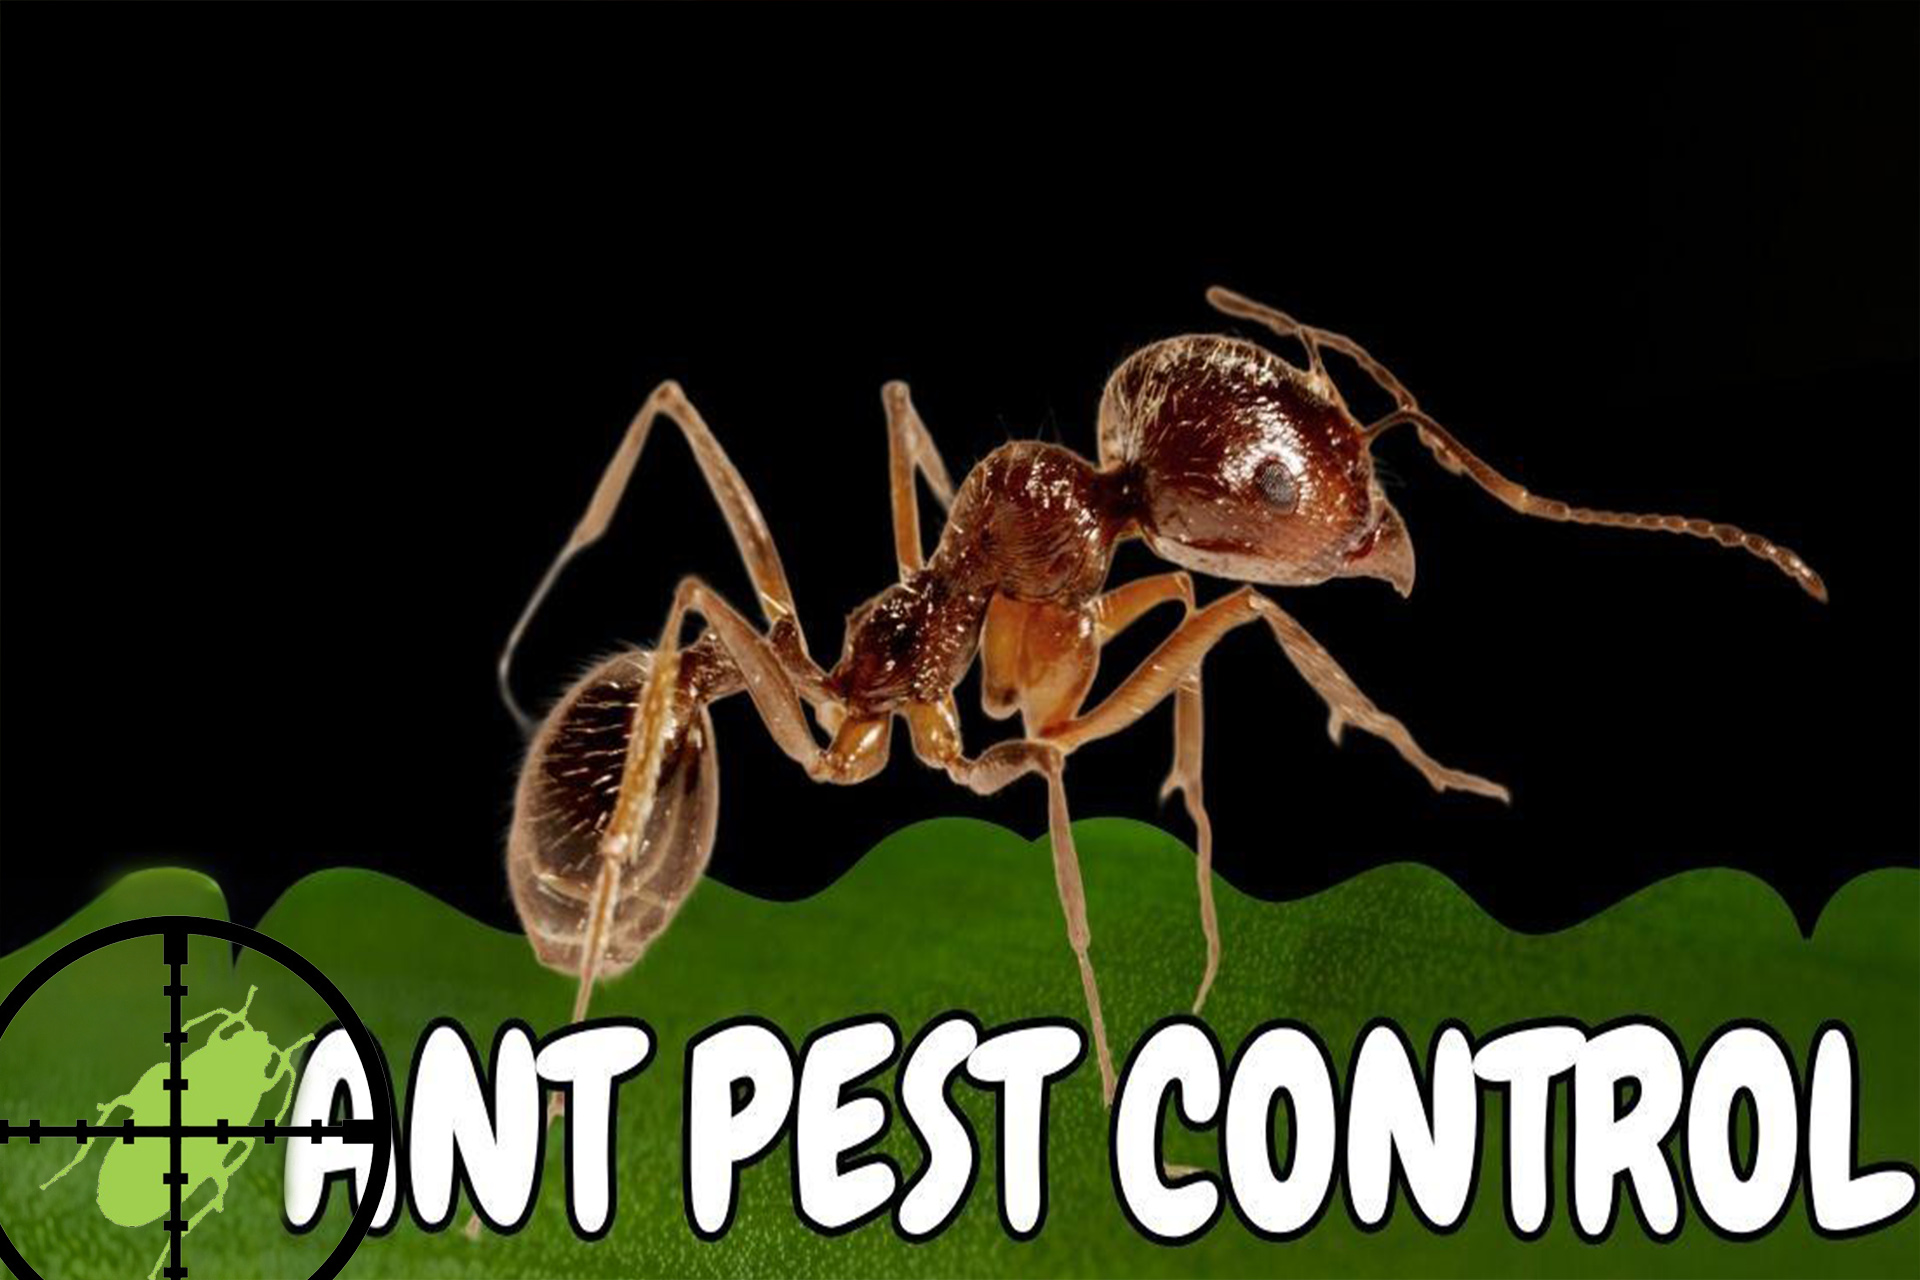 ant pest control experts Birmingham